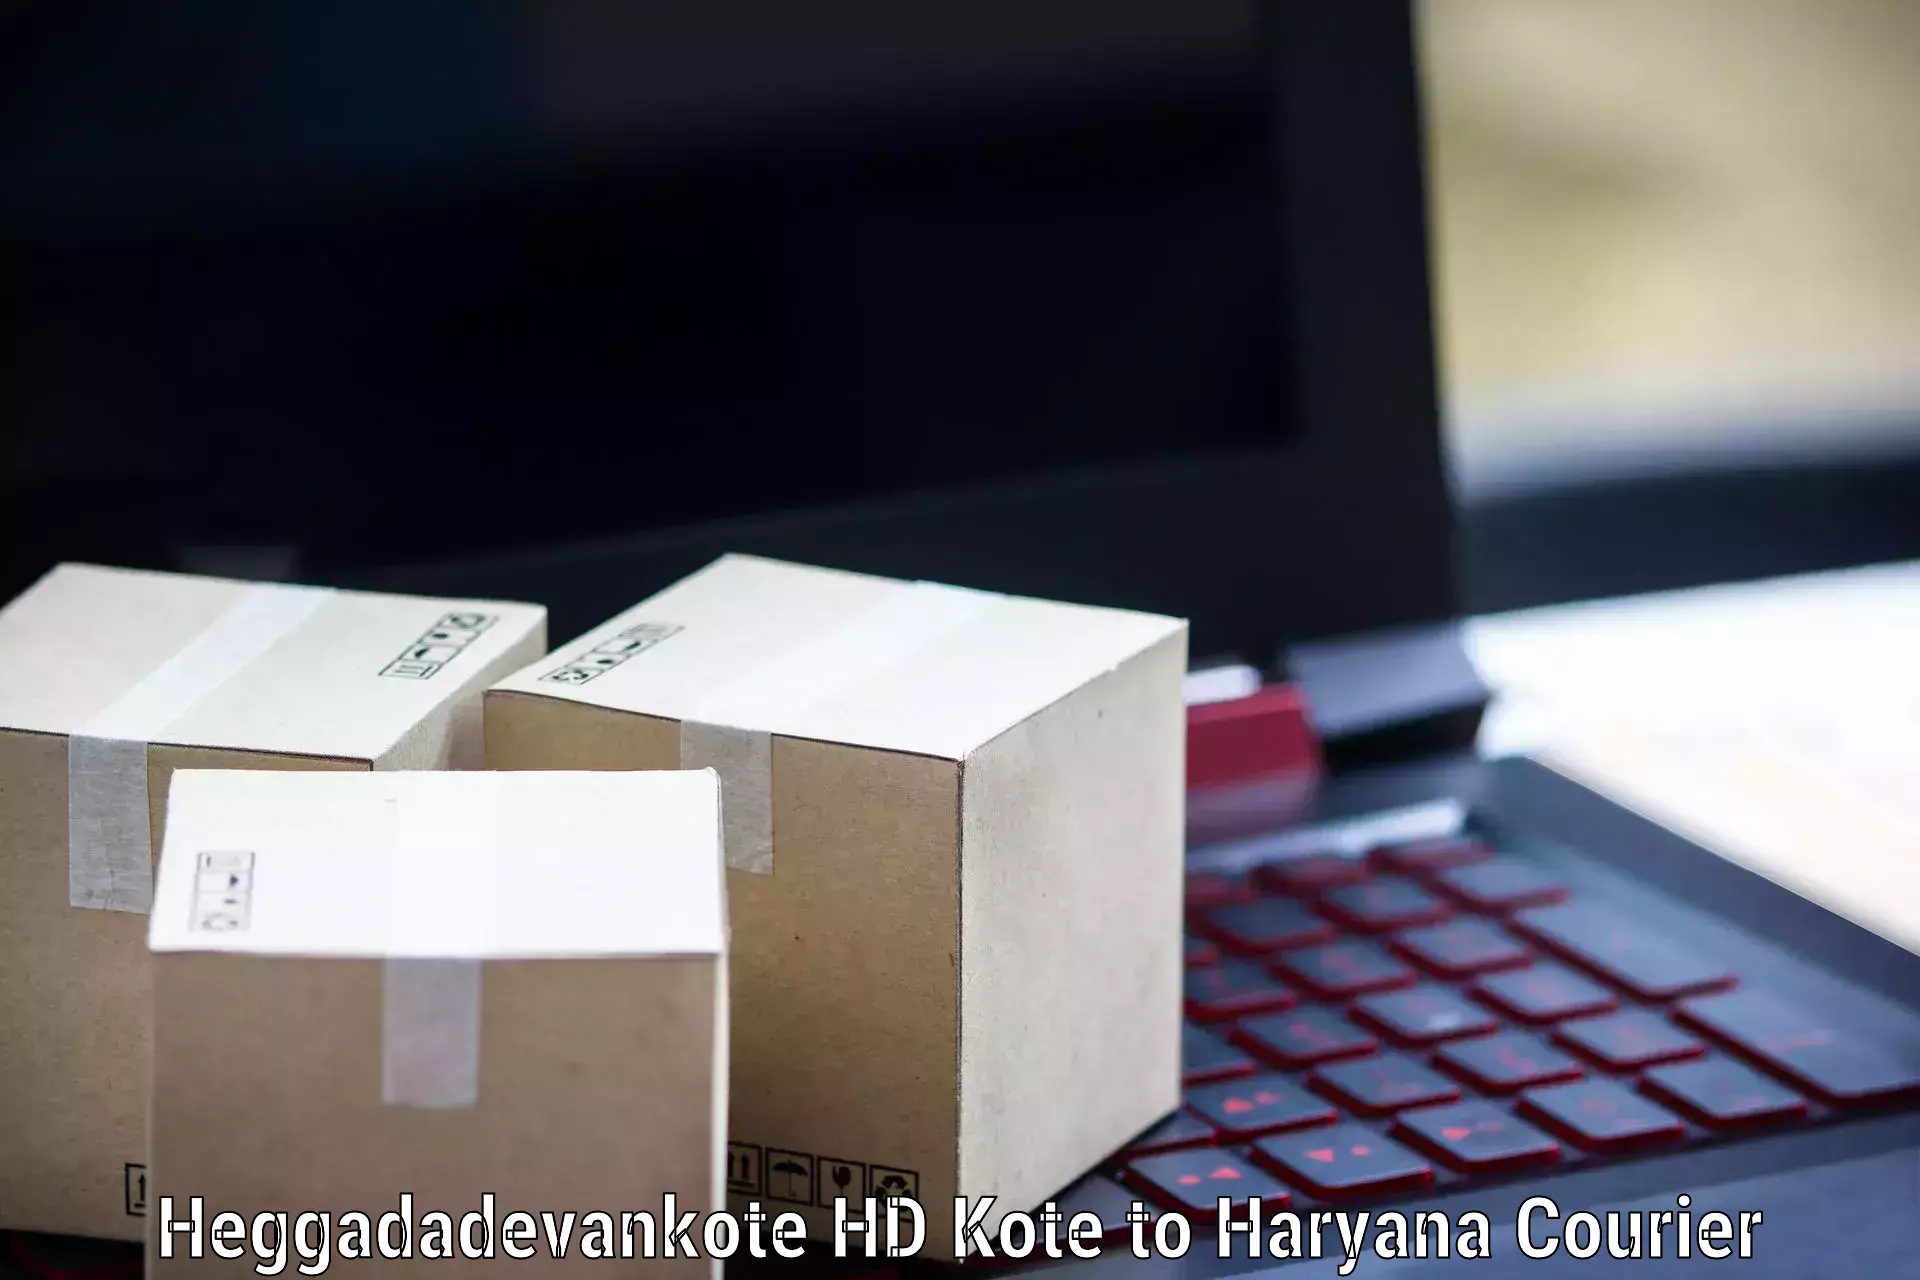 Global parcel delivery Heggadadevankote HD Kote to IIIT Sonepat